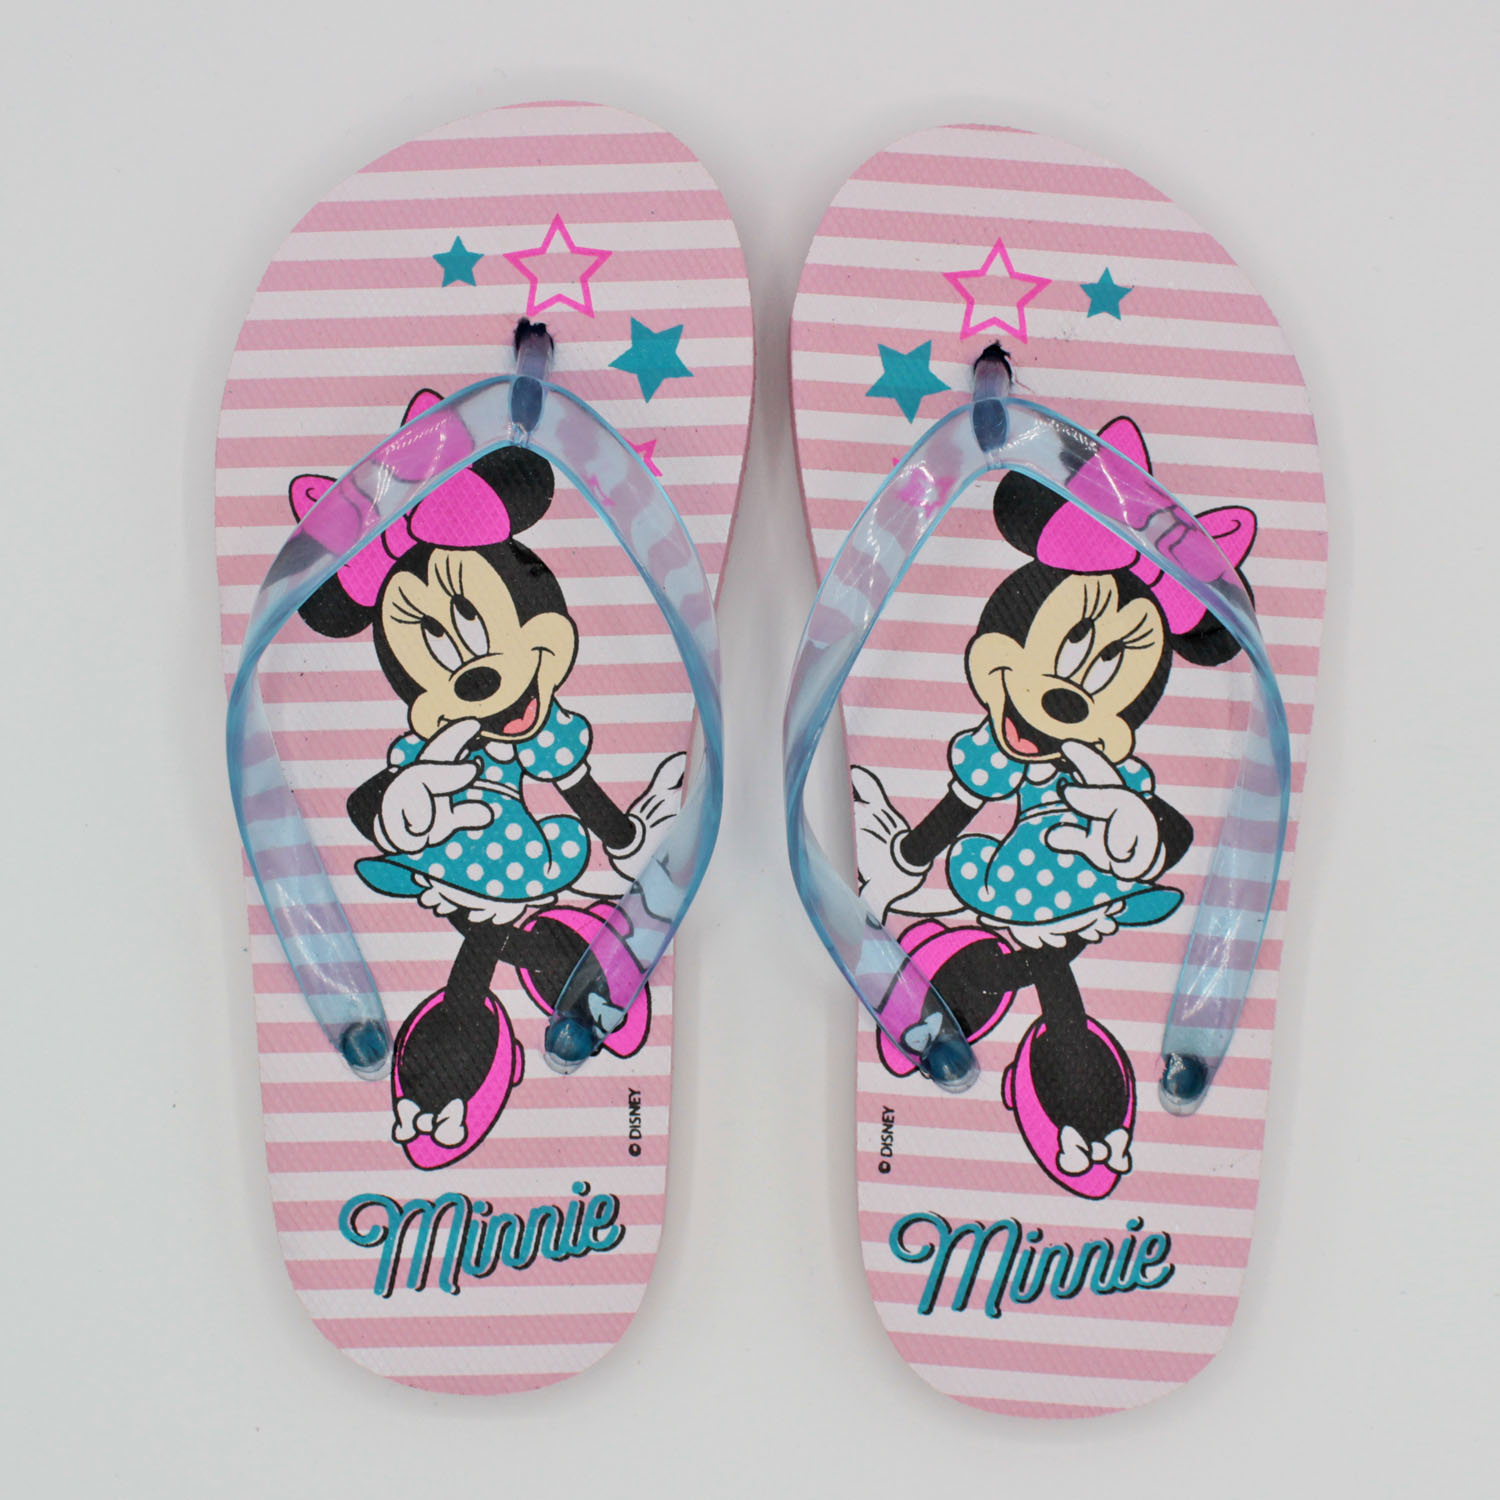 chanclas infantiles de Minnie Mouse para niña